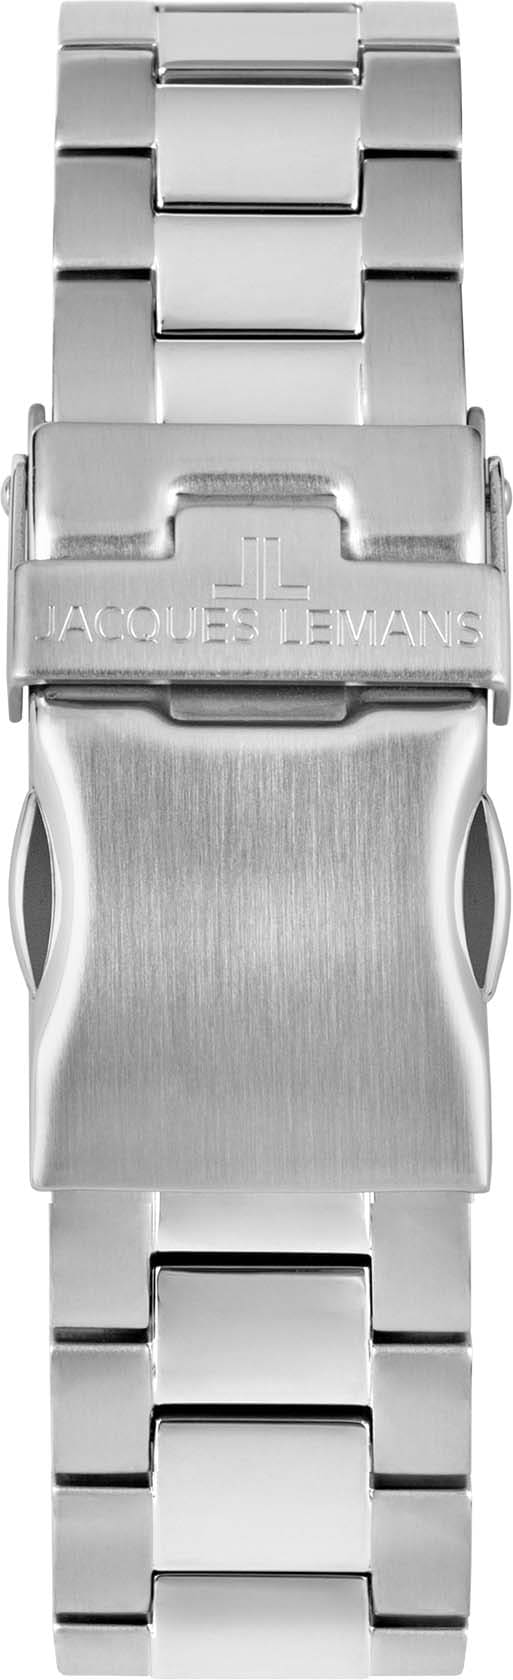 Jacques Lemans Multifunktionsuhr »42-11E«